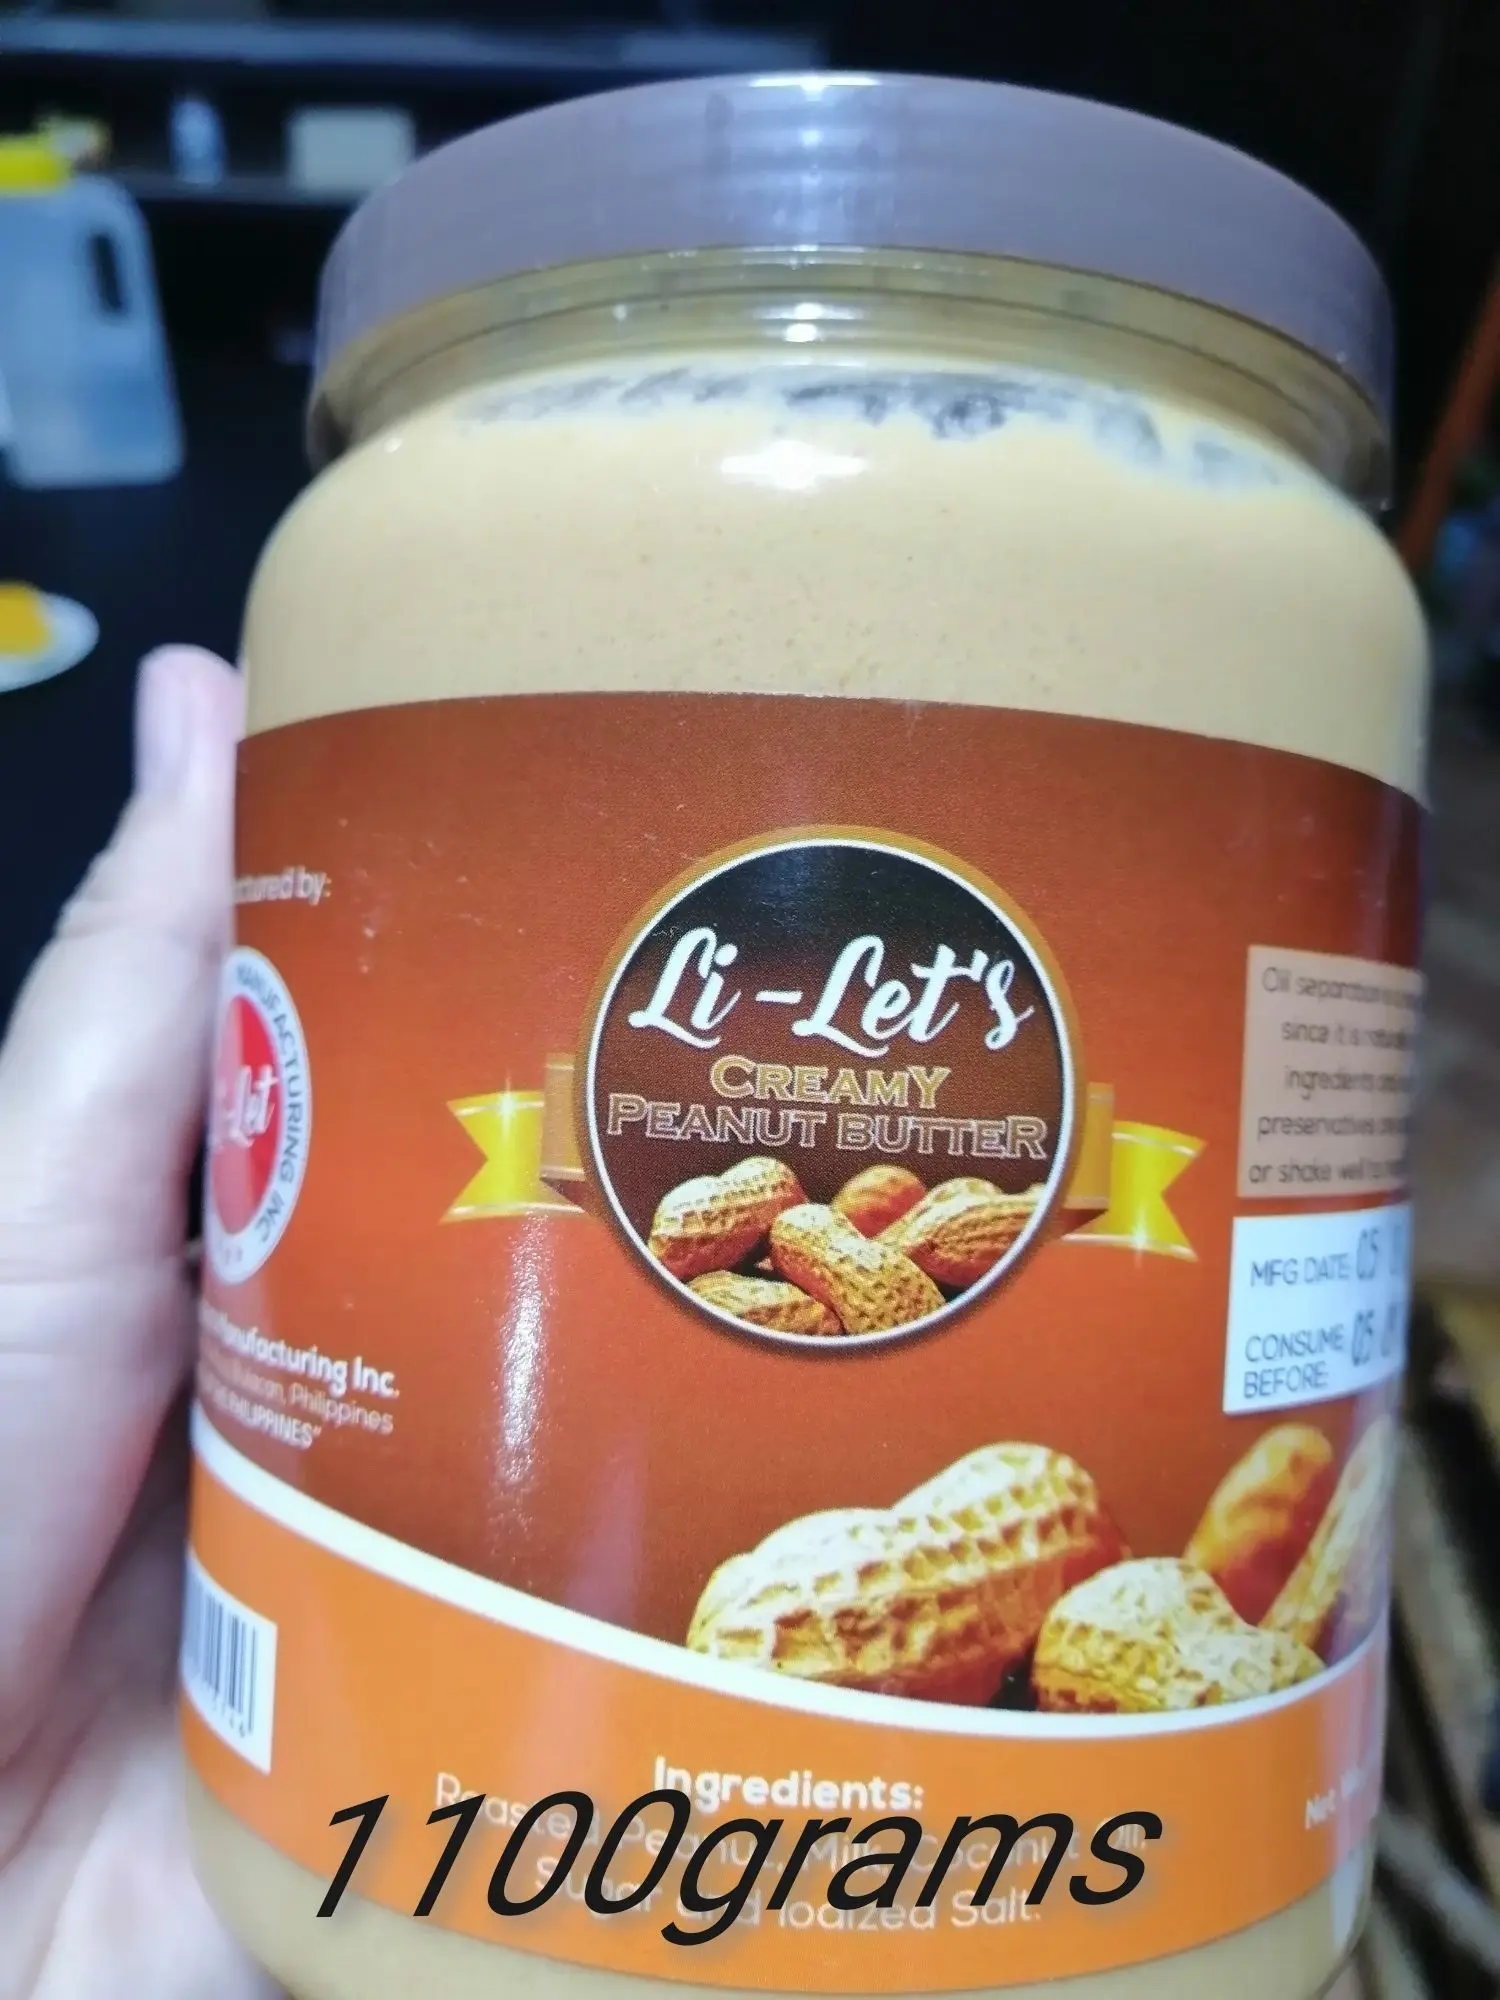 Lilets Peanut Butter 1100grams